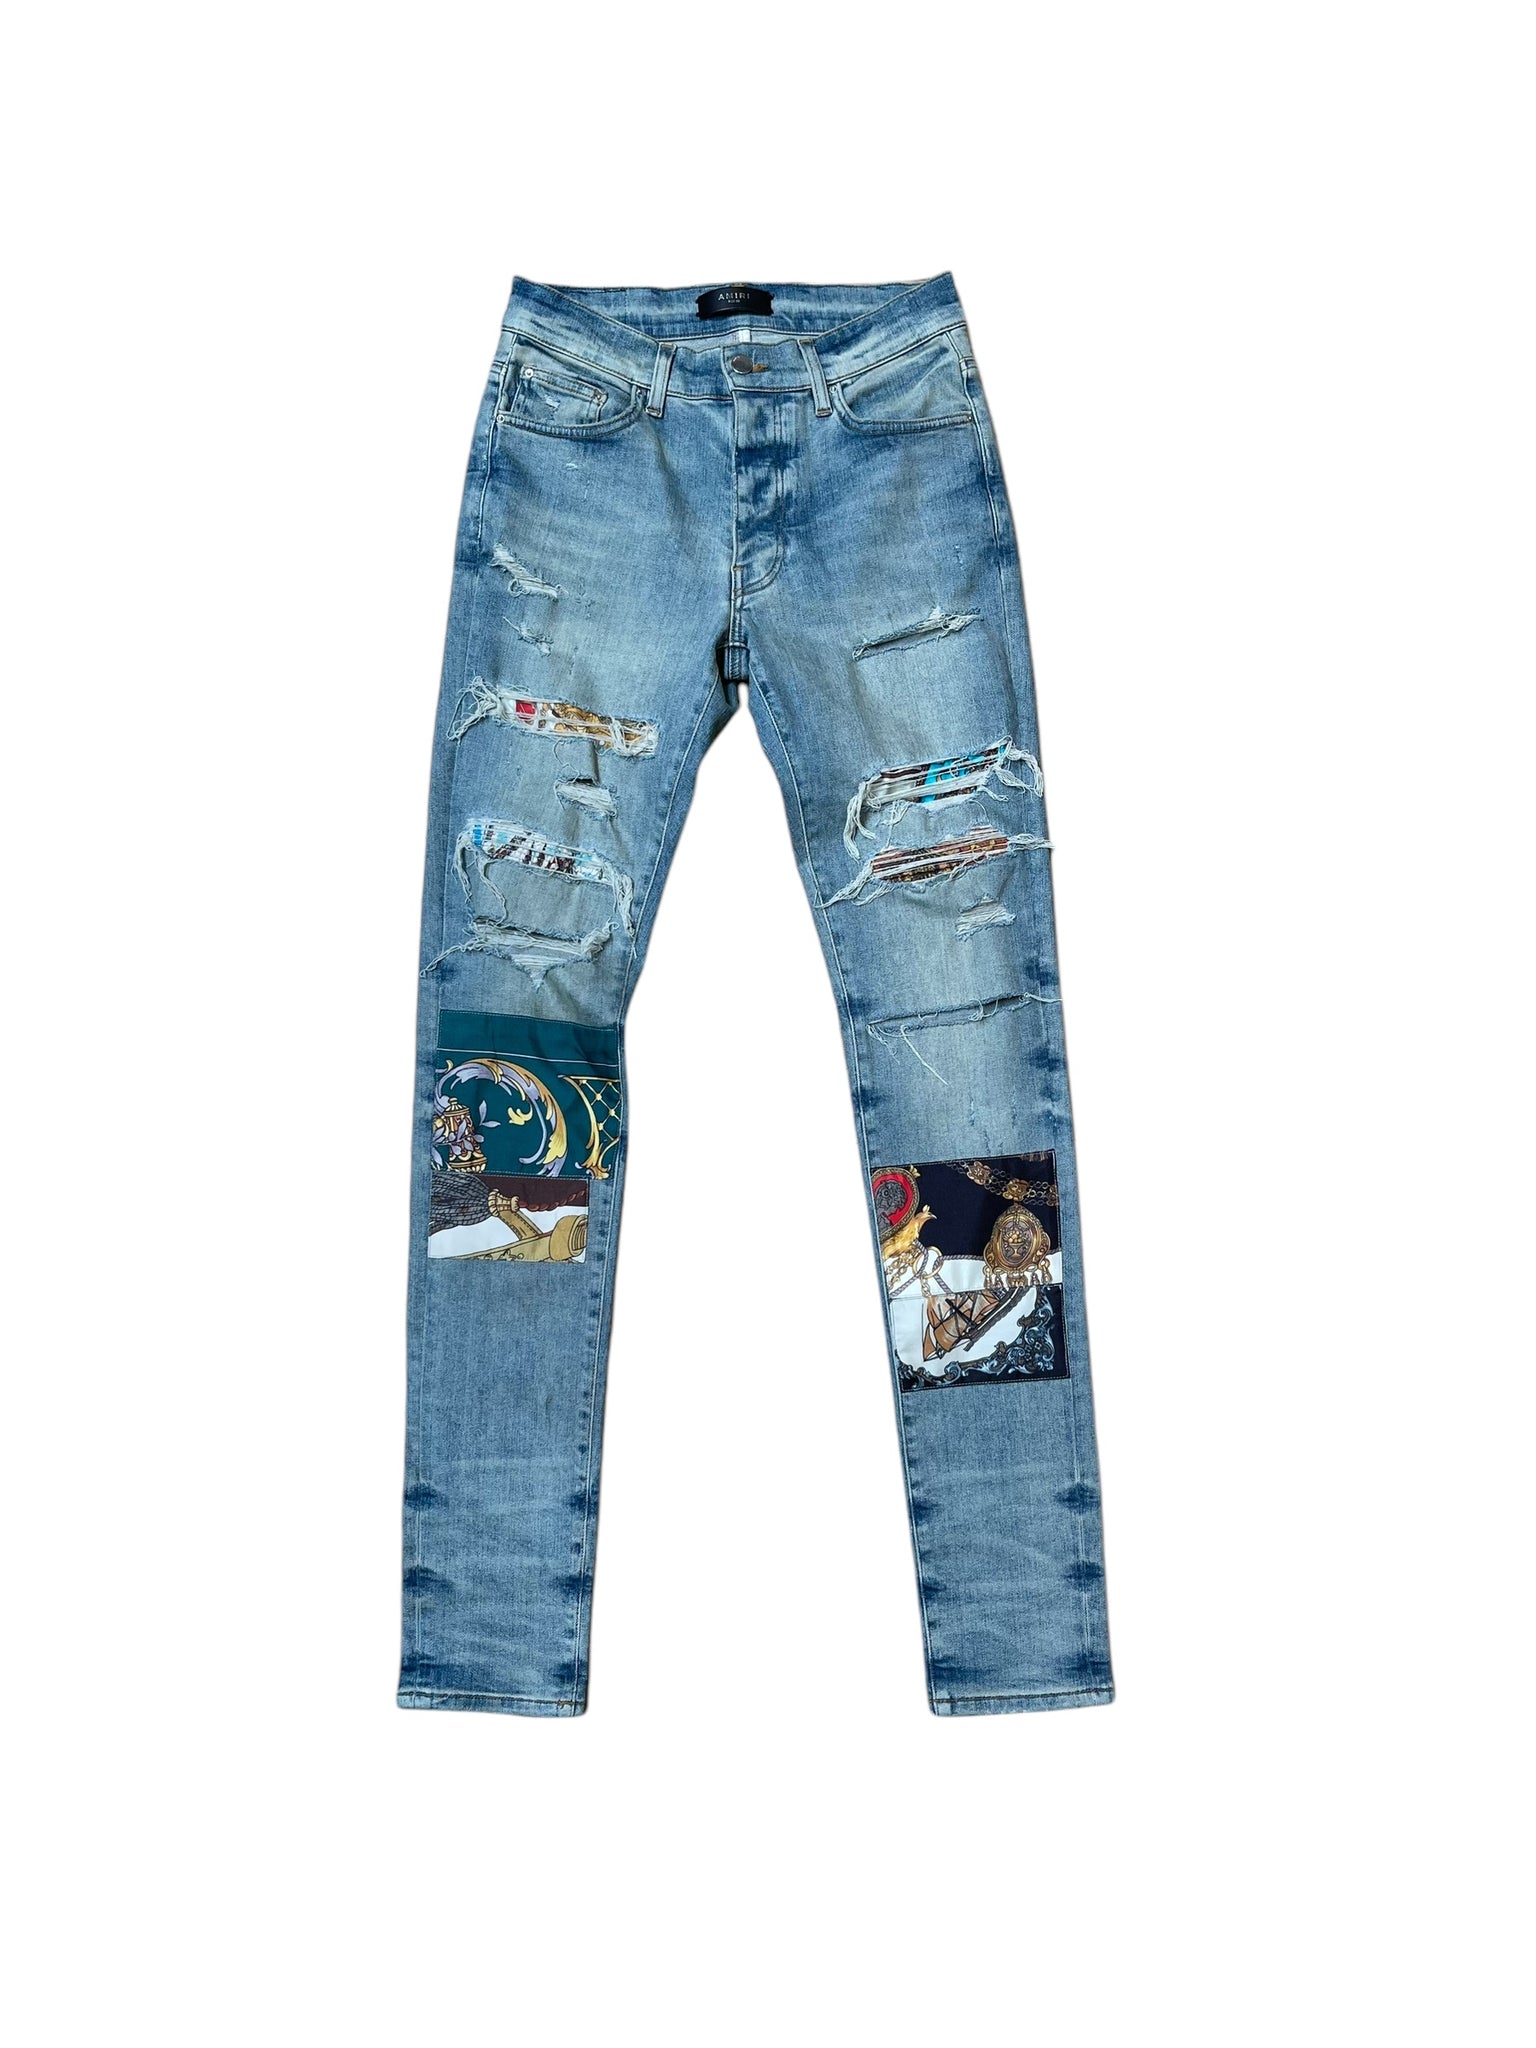 Amiri MX1 Distressed Jeans "Pirate Patch"